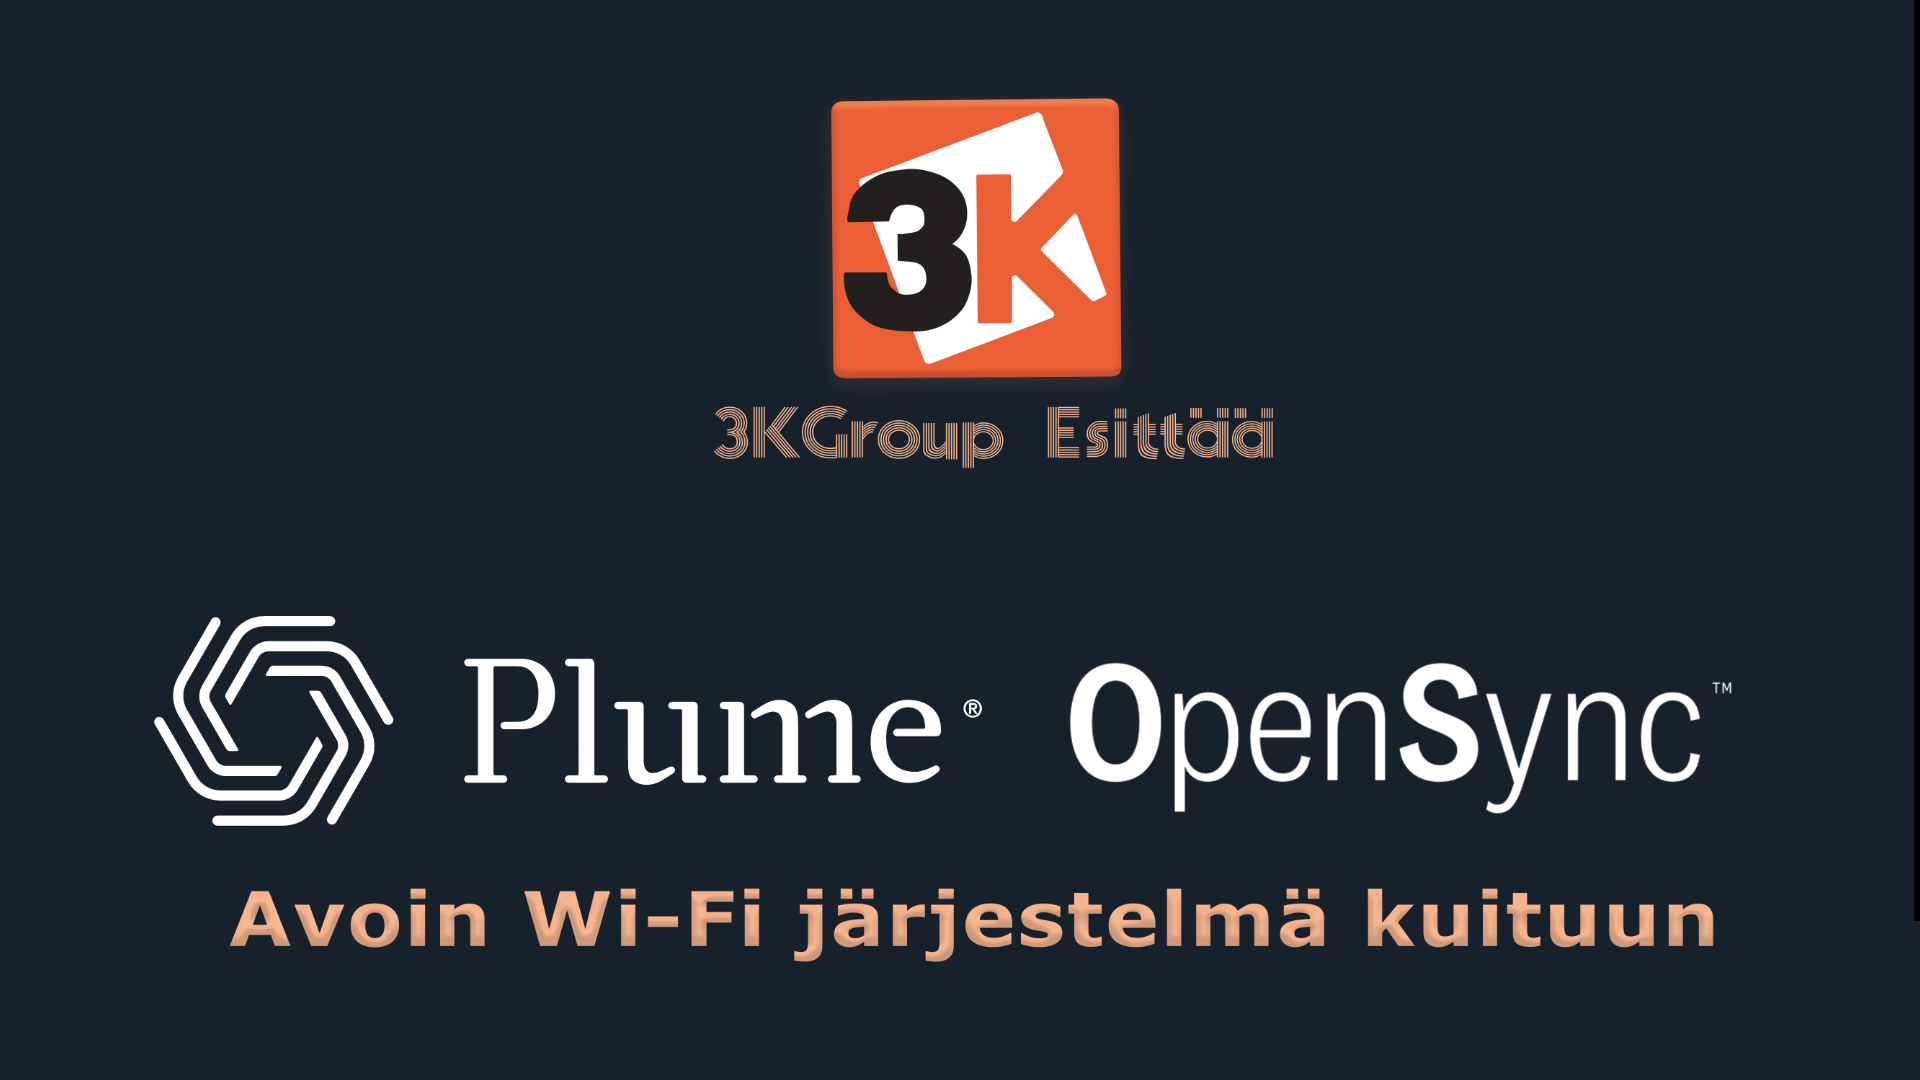 3kgroup Plume OpenSync Kuitu Kiitotie